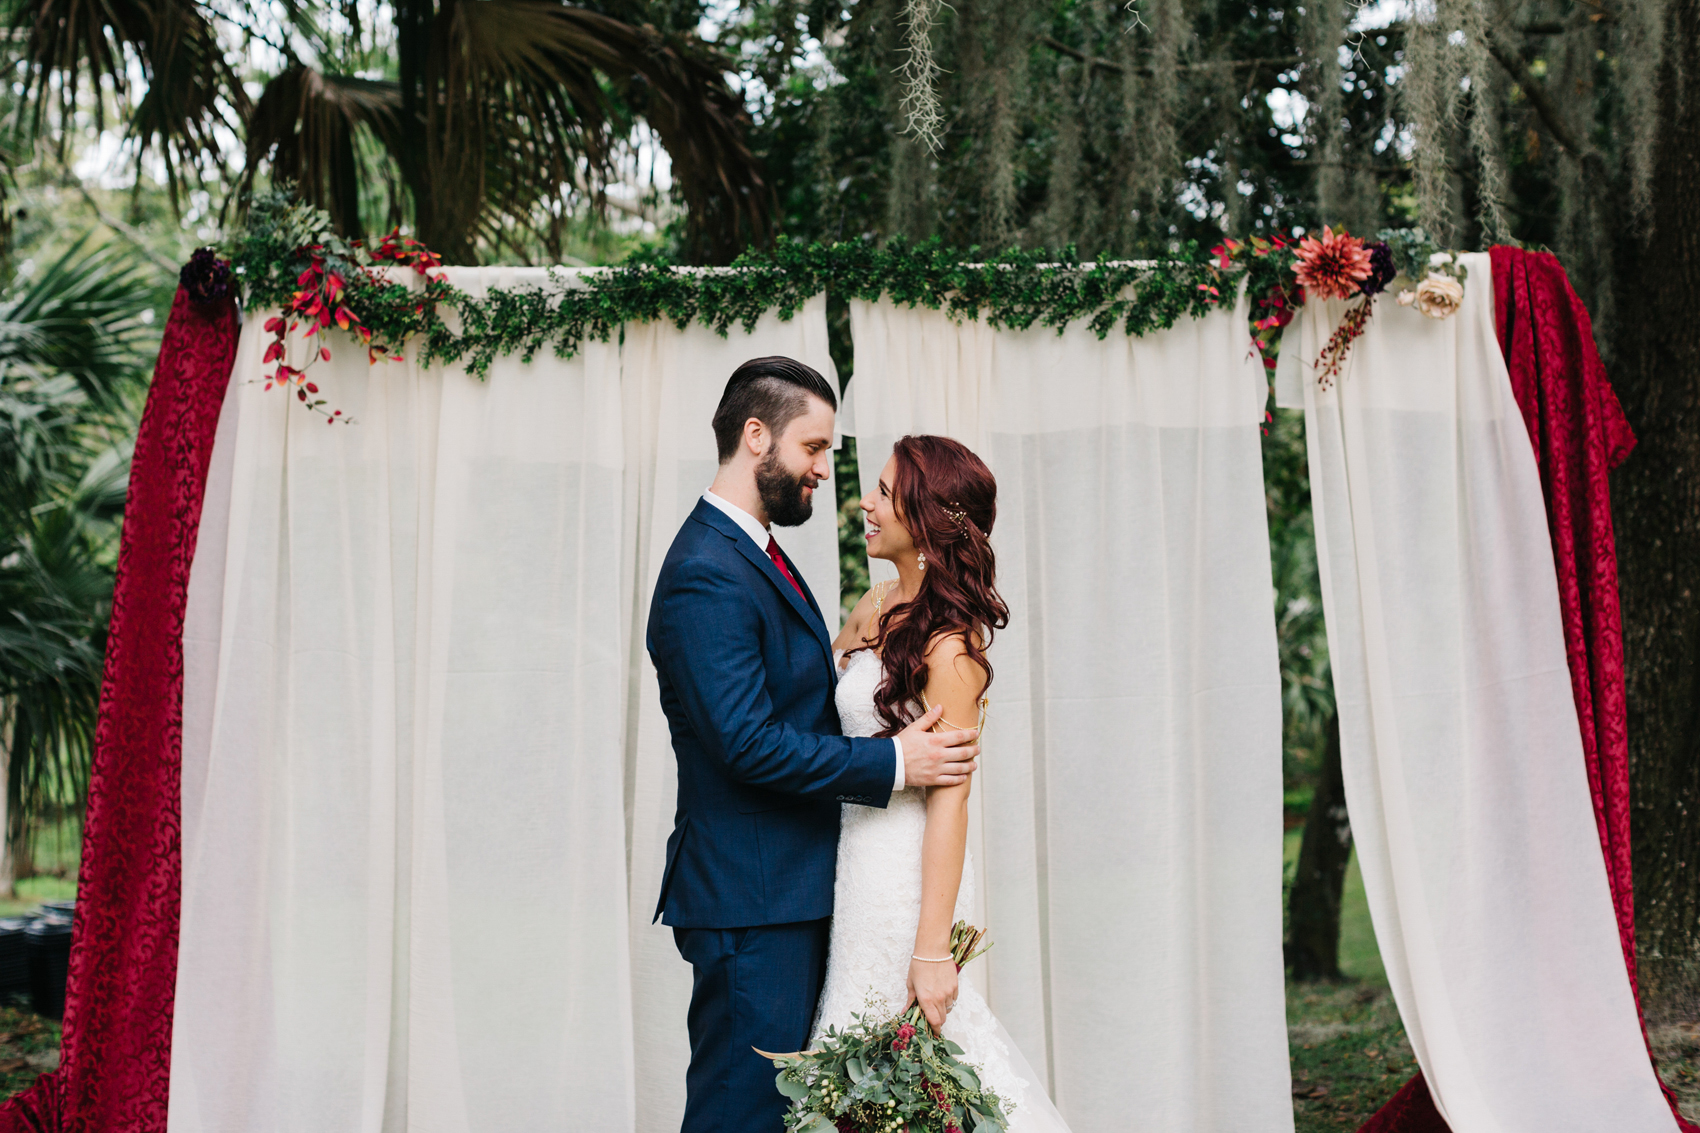 Woodsy boho wedding photography in Orlando, Florida